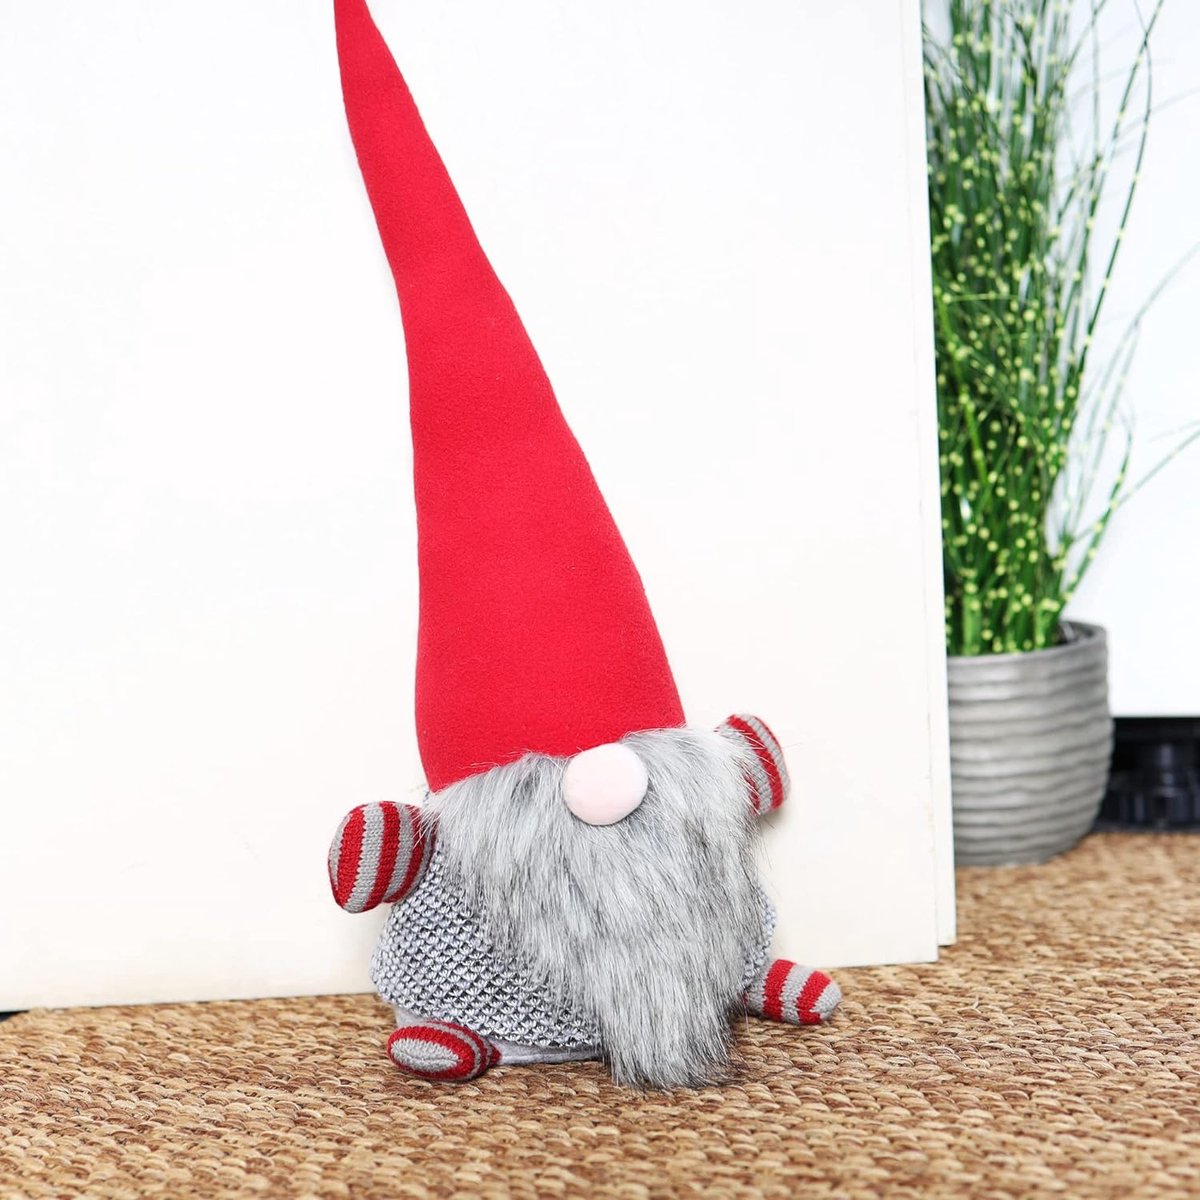 Deurstopper, 1,4 kg deurhouder in kerstkabouterdesign, boekensteunen in Scandinavisch design - kabouterfiguur voor verzamelaars (Gnome - rode muts en grijze baard)